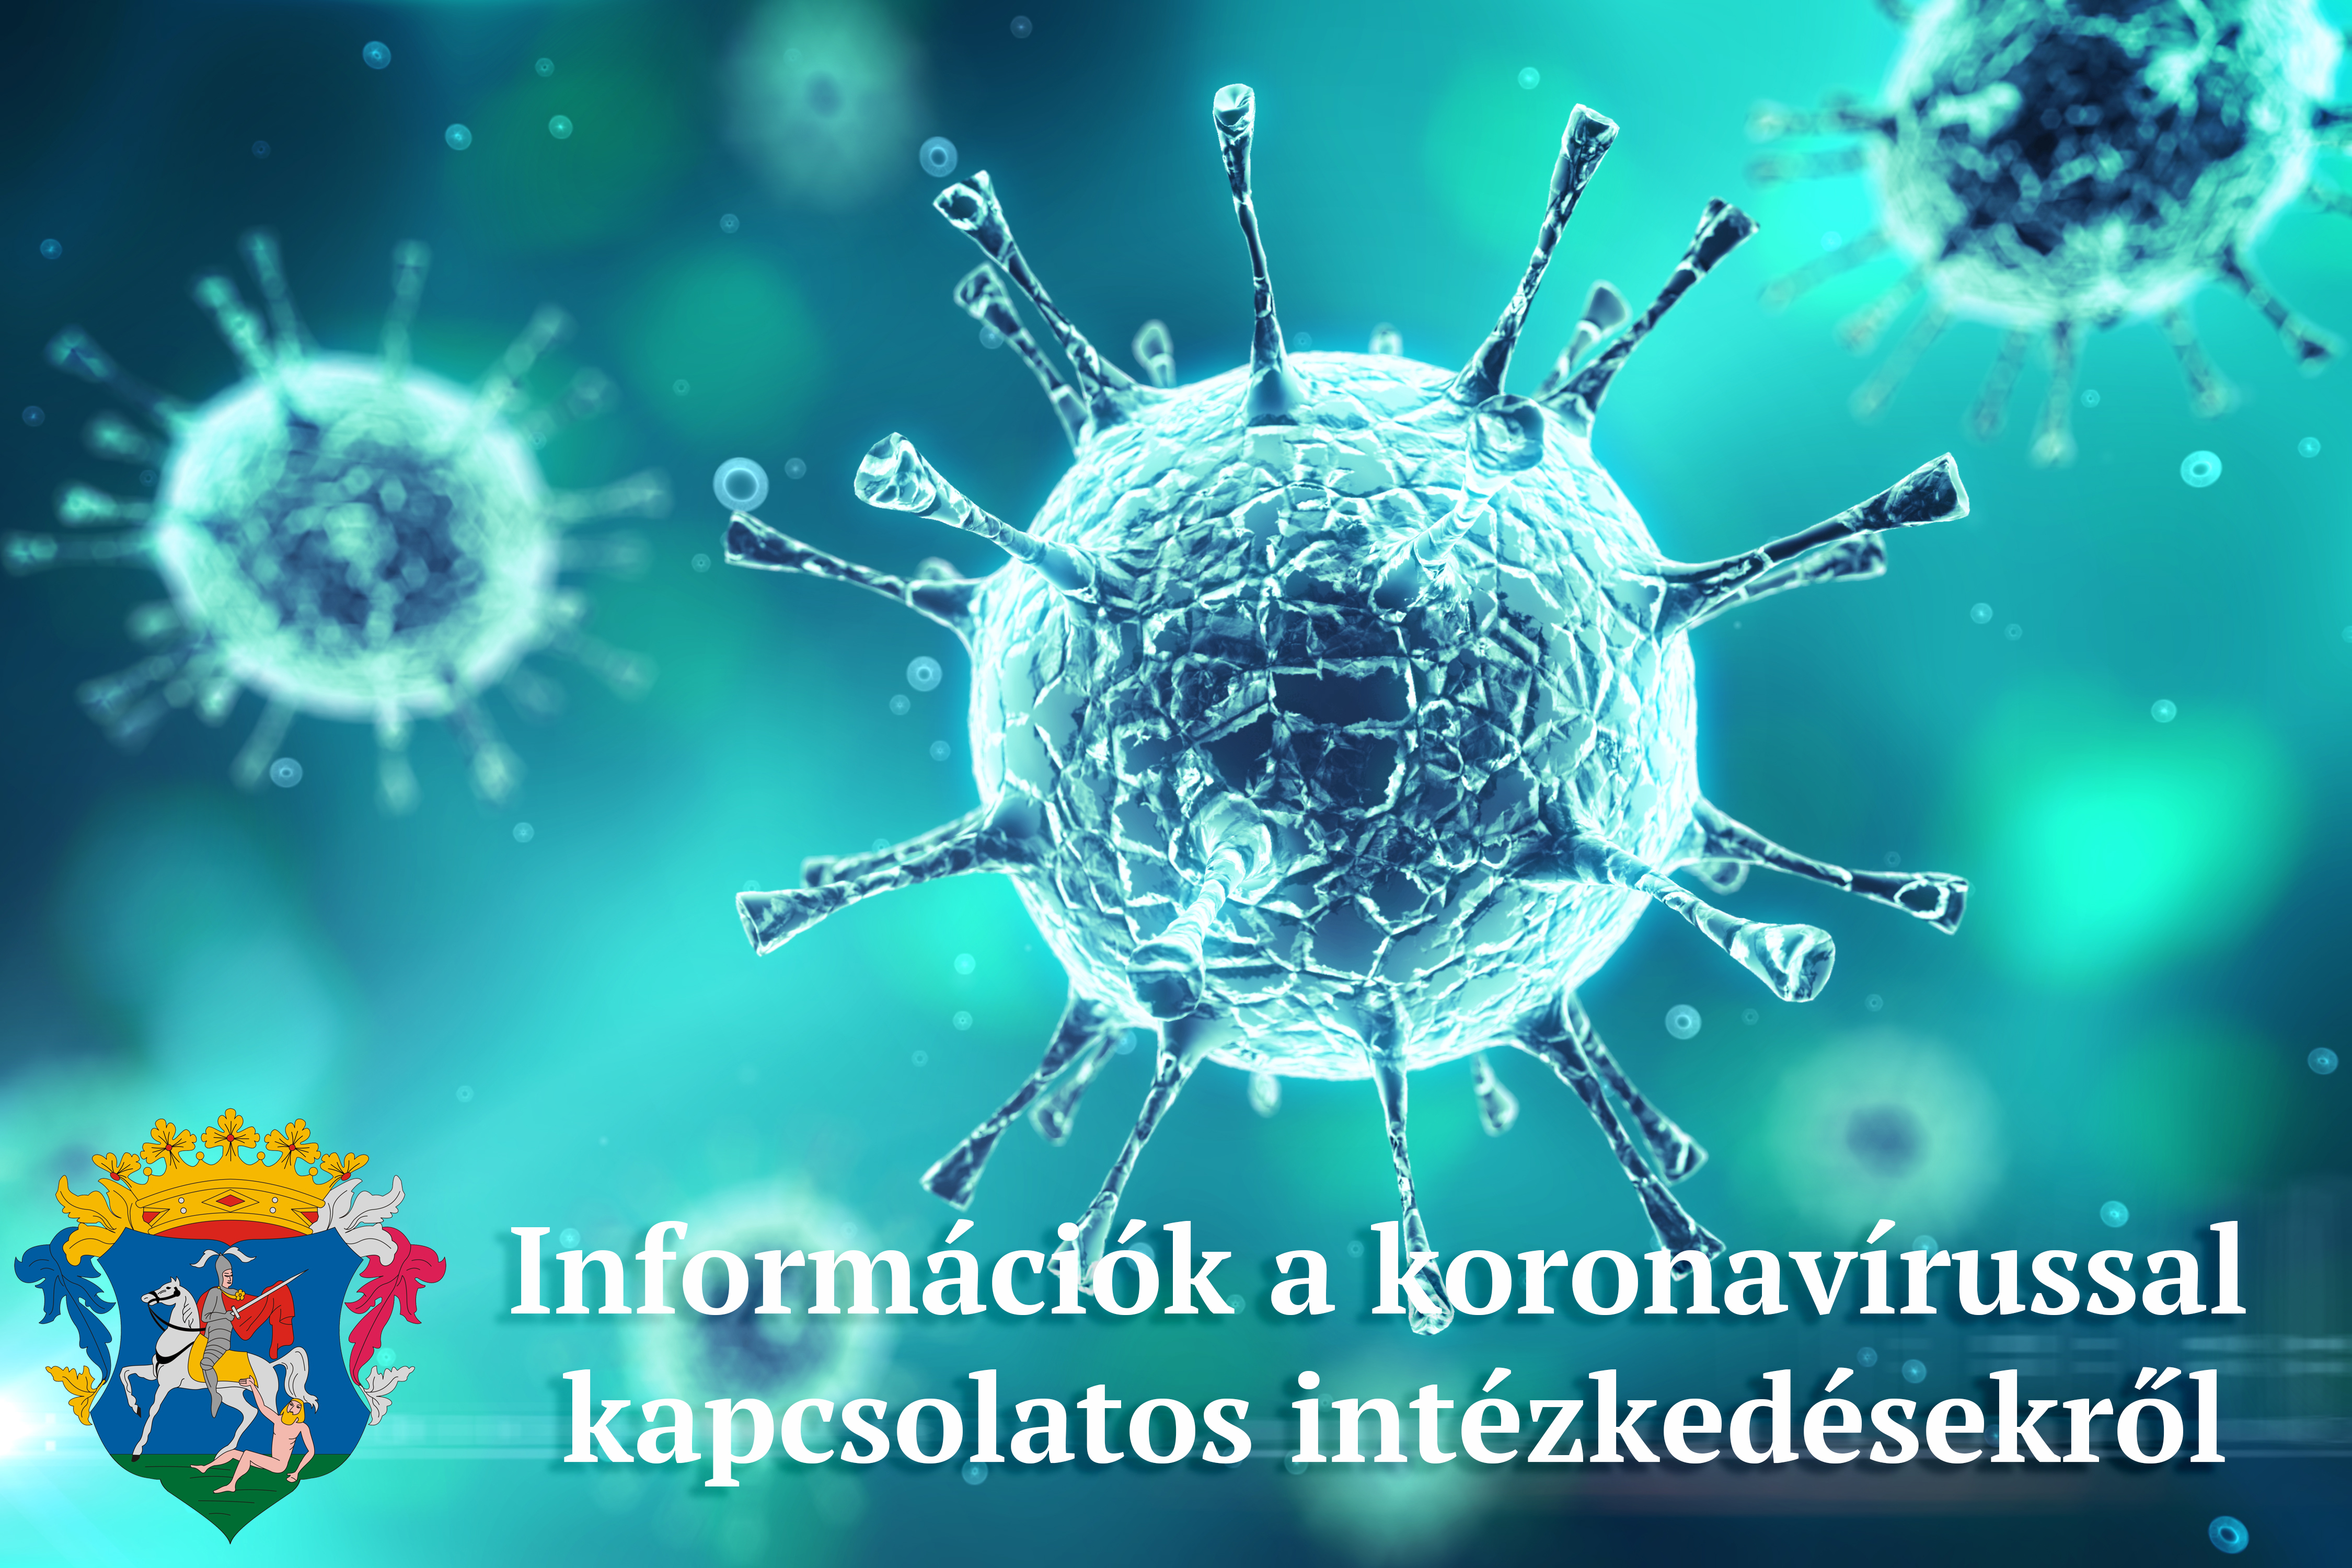 információk a koronavírussal kapcsolatos intézkedésekről, döntésekről 2021. március 12.